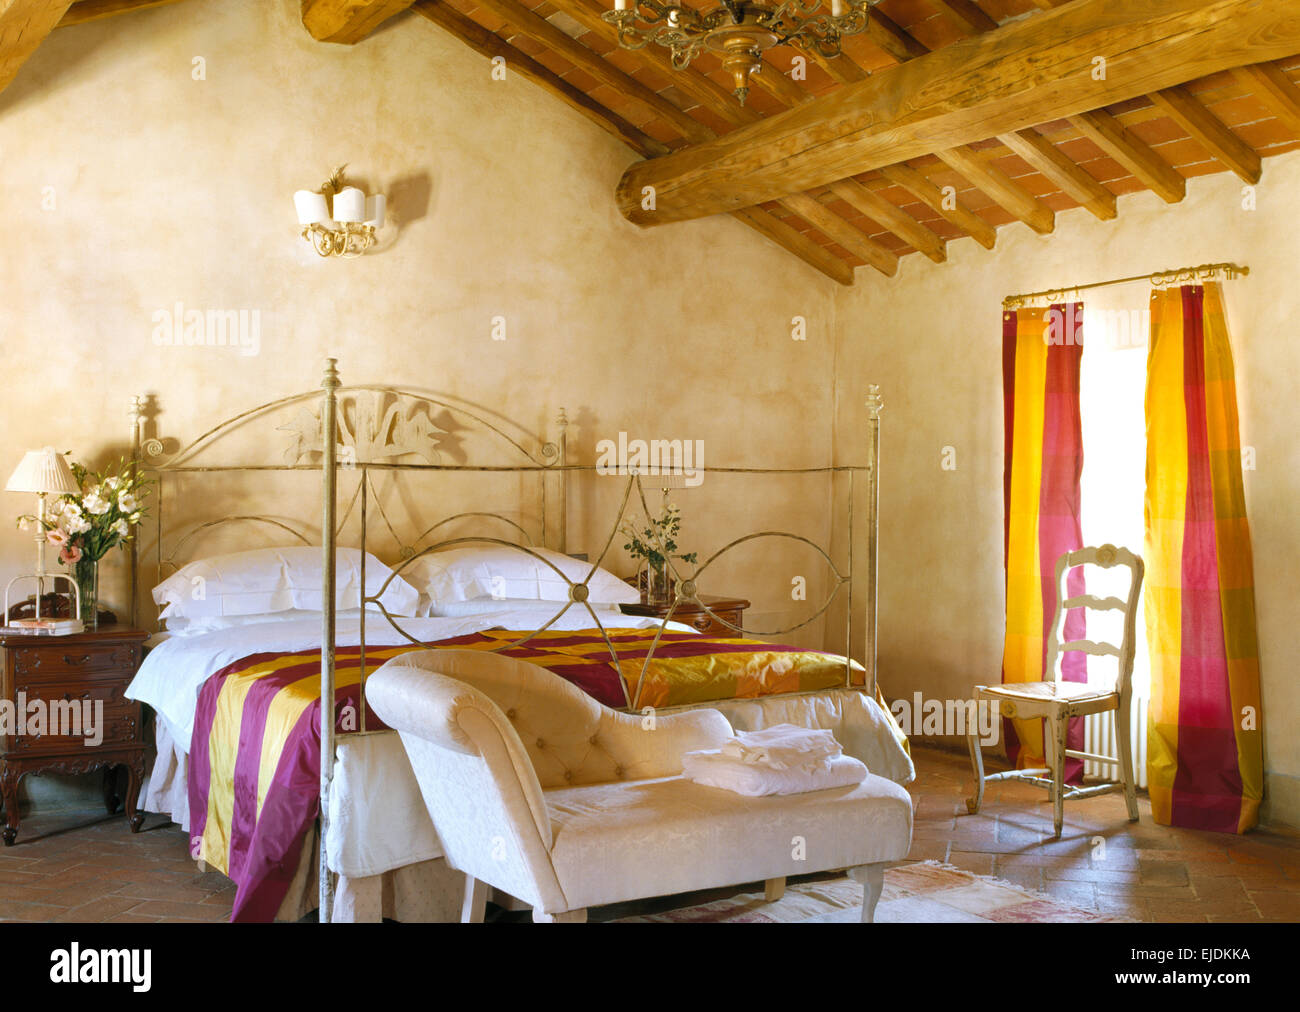 Kleine Chaiselongue am Fuße des reich verzierten schmiedeeisernen Bett mit bunt gestreiften Seide werfen im toskanischen Schlafzimmer Stockfoto